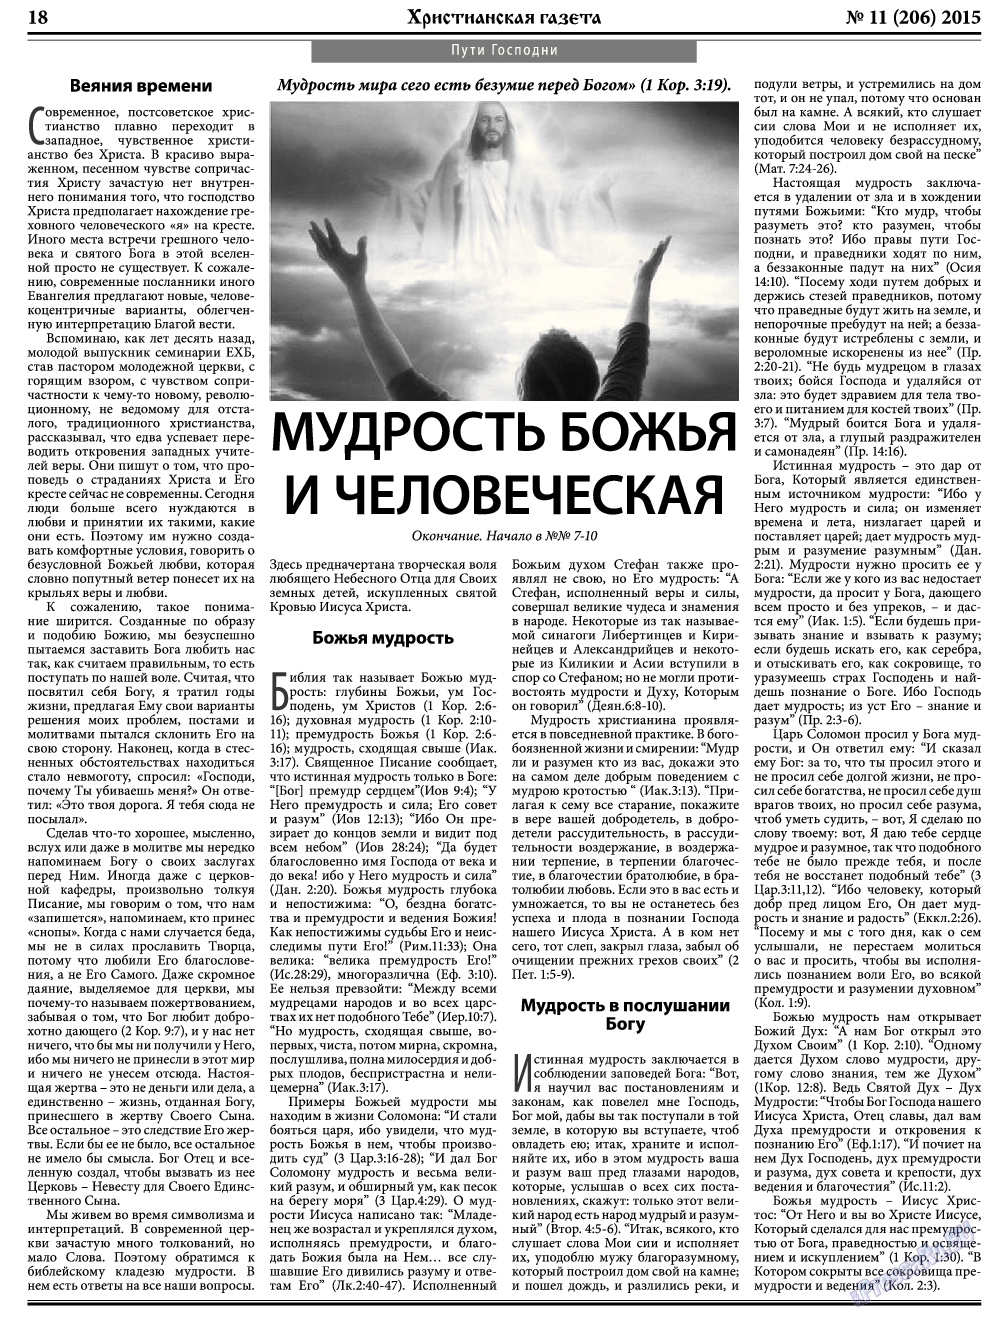 Христианская газета, газета. 2015 №11 стр.26